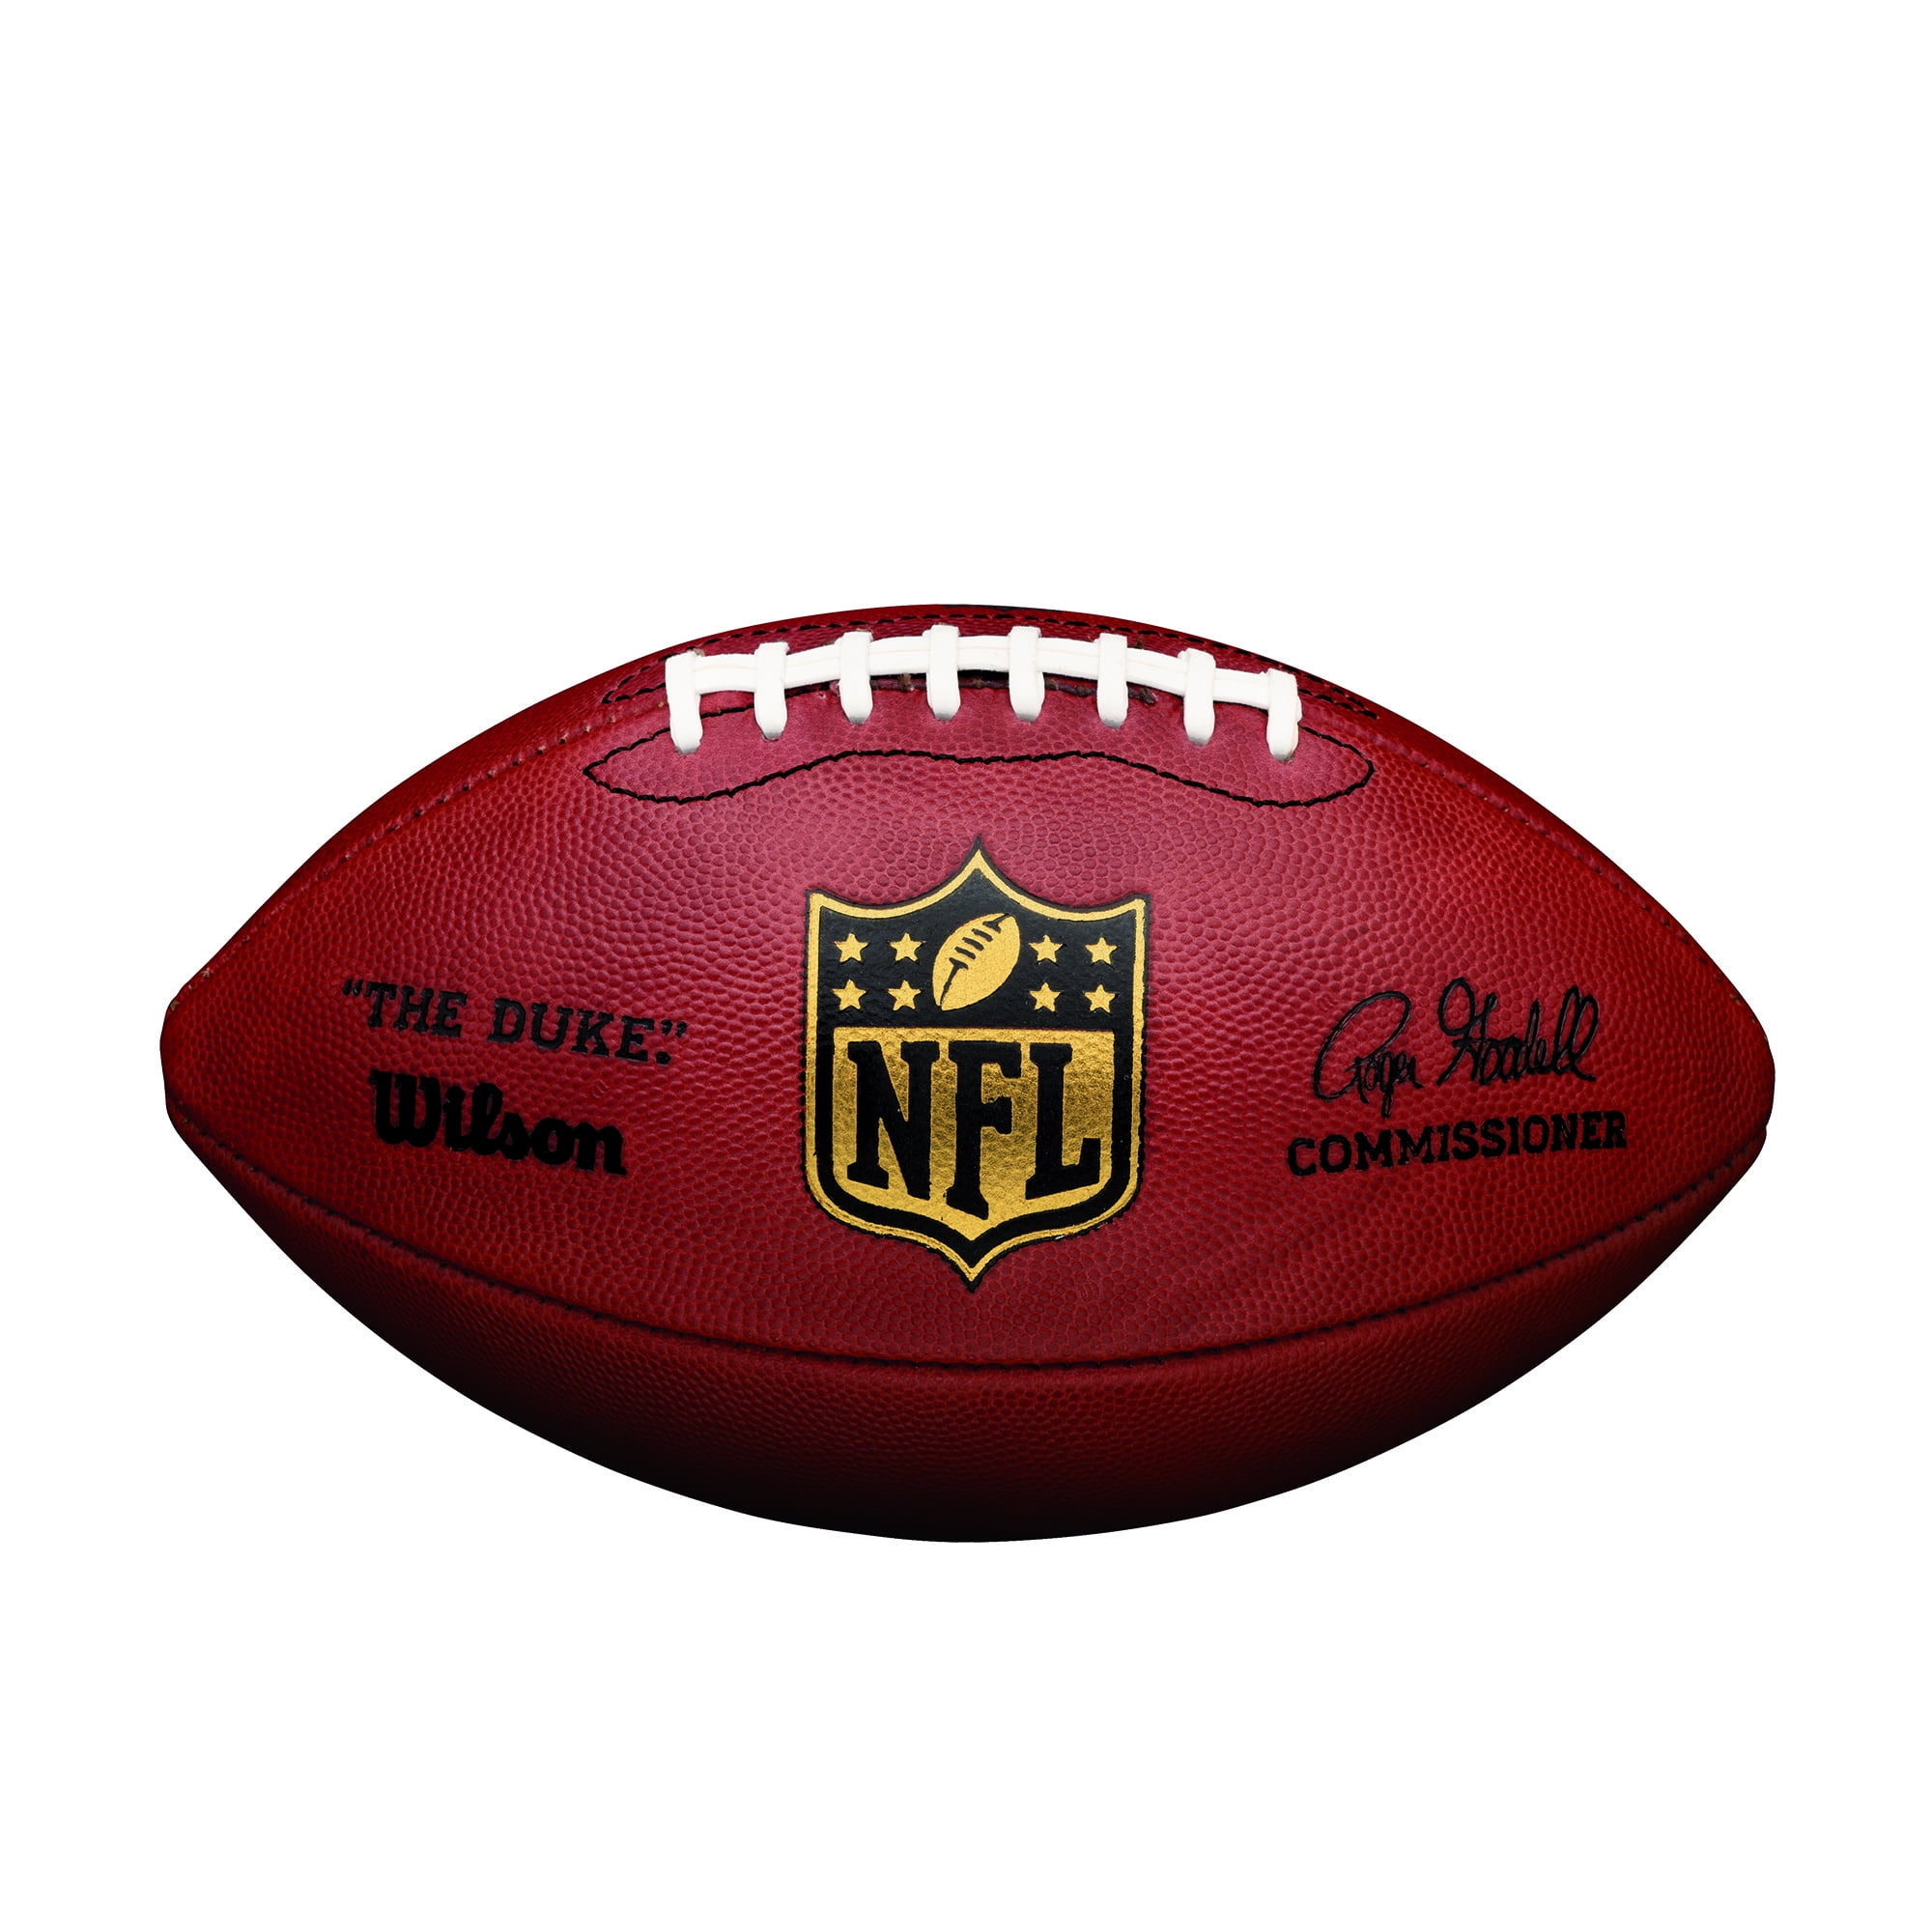 Wilson 'The Duke' NFL Official Game Football 